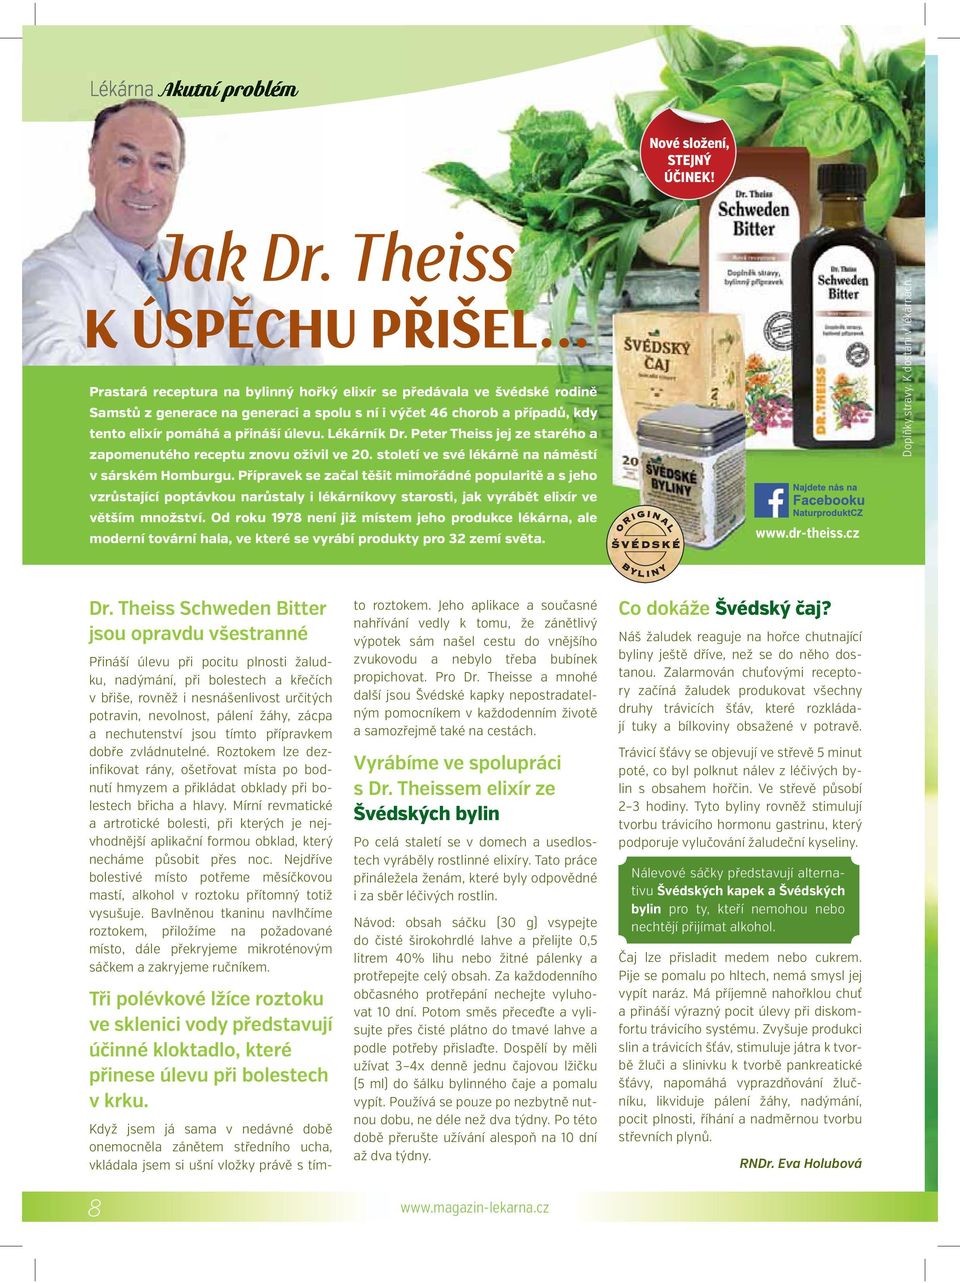 přináší úlevu. Lékárník Dr. Peter Theiss jej ze starého a zapomenutého receptu znovu oživil ve 20. století ve své lékárně na náměstí v sárském Homburgu.